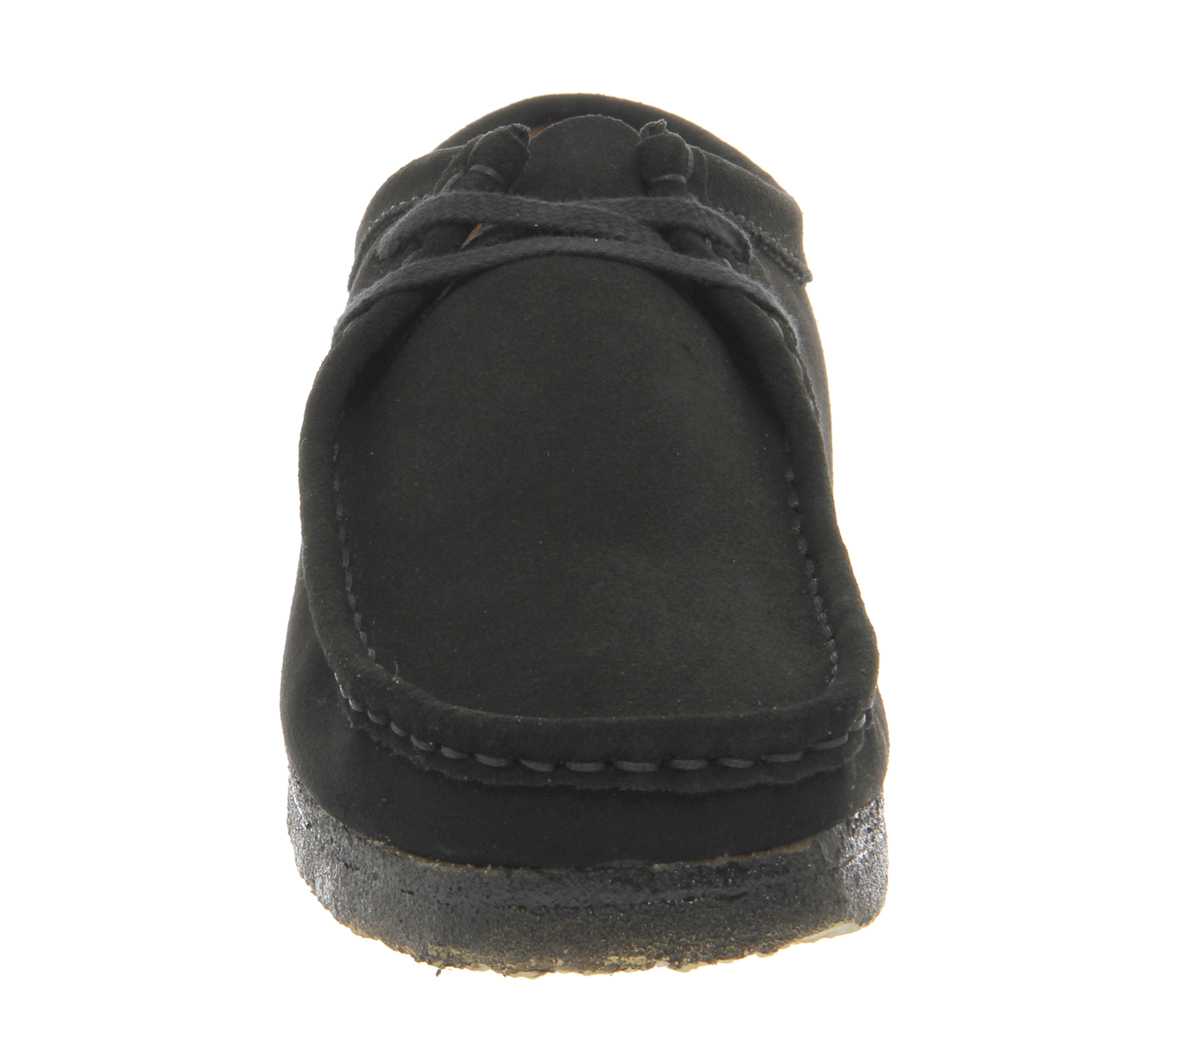 Clarks Originals Wallabee Shoes Black Suede - Casual